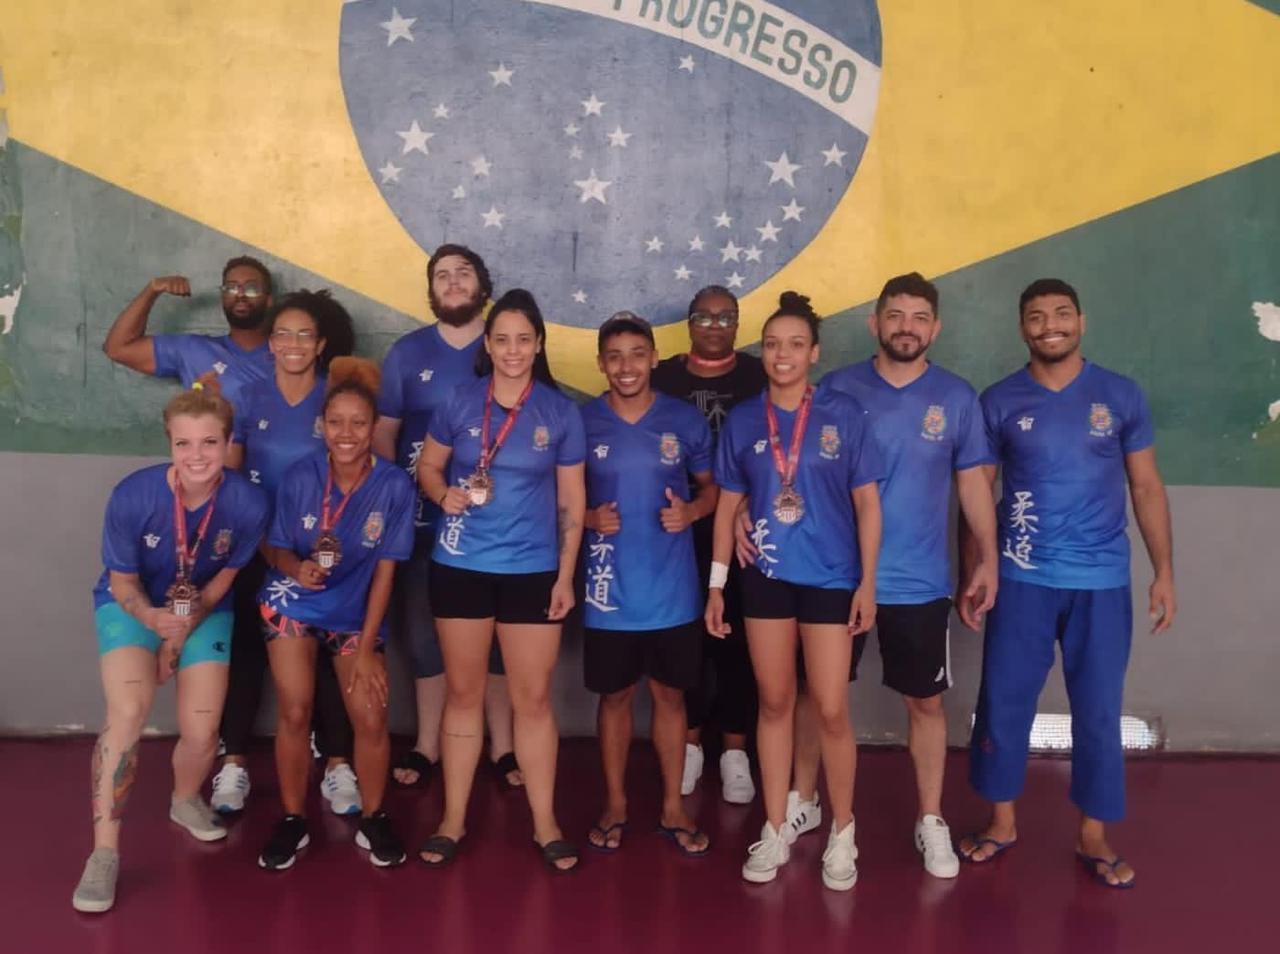 Campeonato Paulista Sub18 – Fase Final – Relação dos Classificados - FPJ -  Federação Paulista de Judô